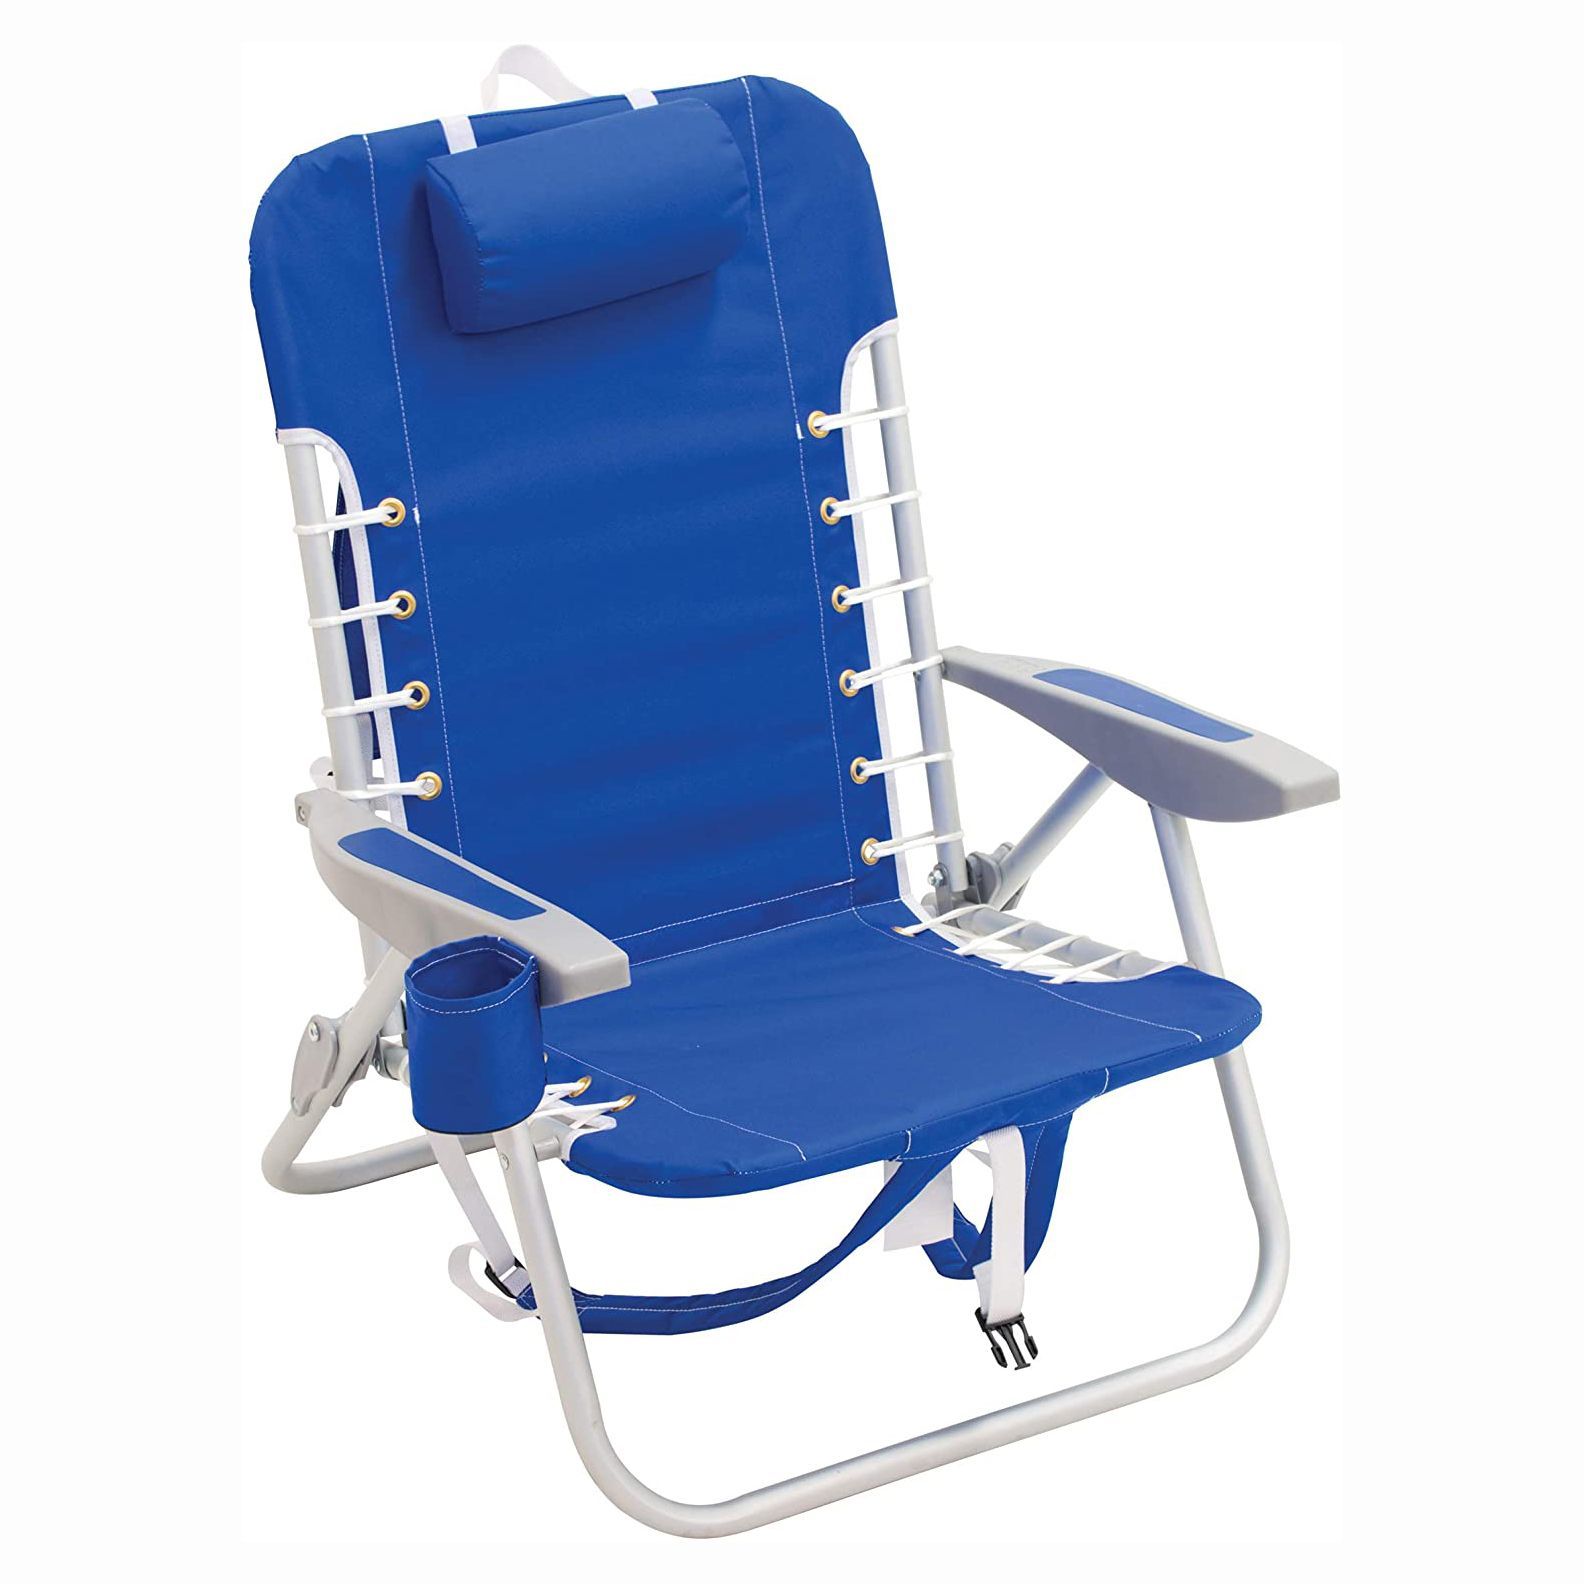 17 inch high seat beach chairs